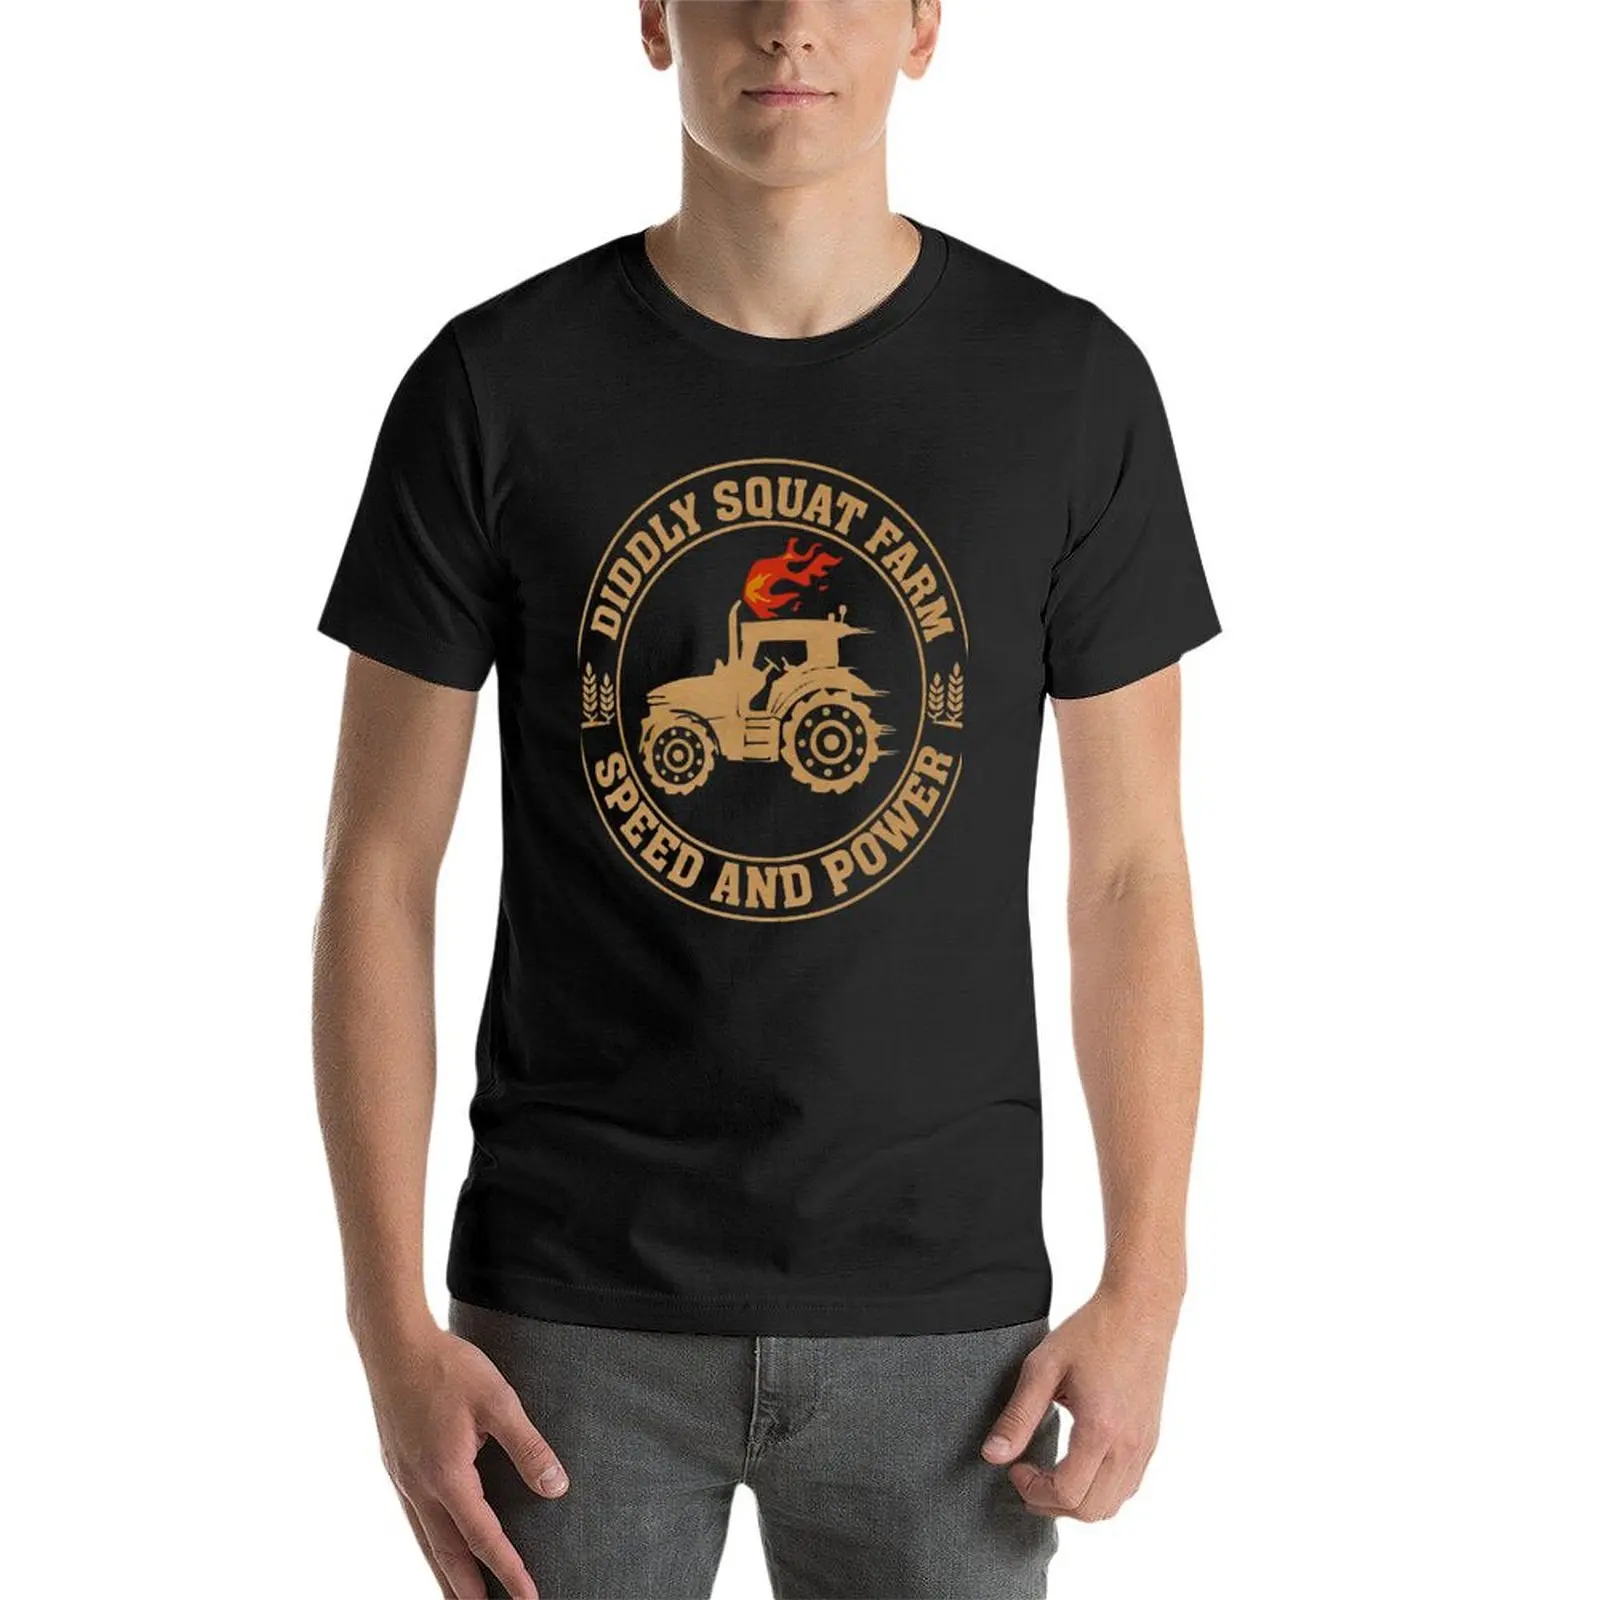 Идеальный дизайн трактора, футболка Diddly Squat Farm Speed And Power, летняя одежда, футболки funnys для мужчин, упаковка